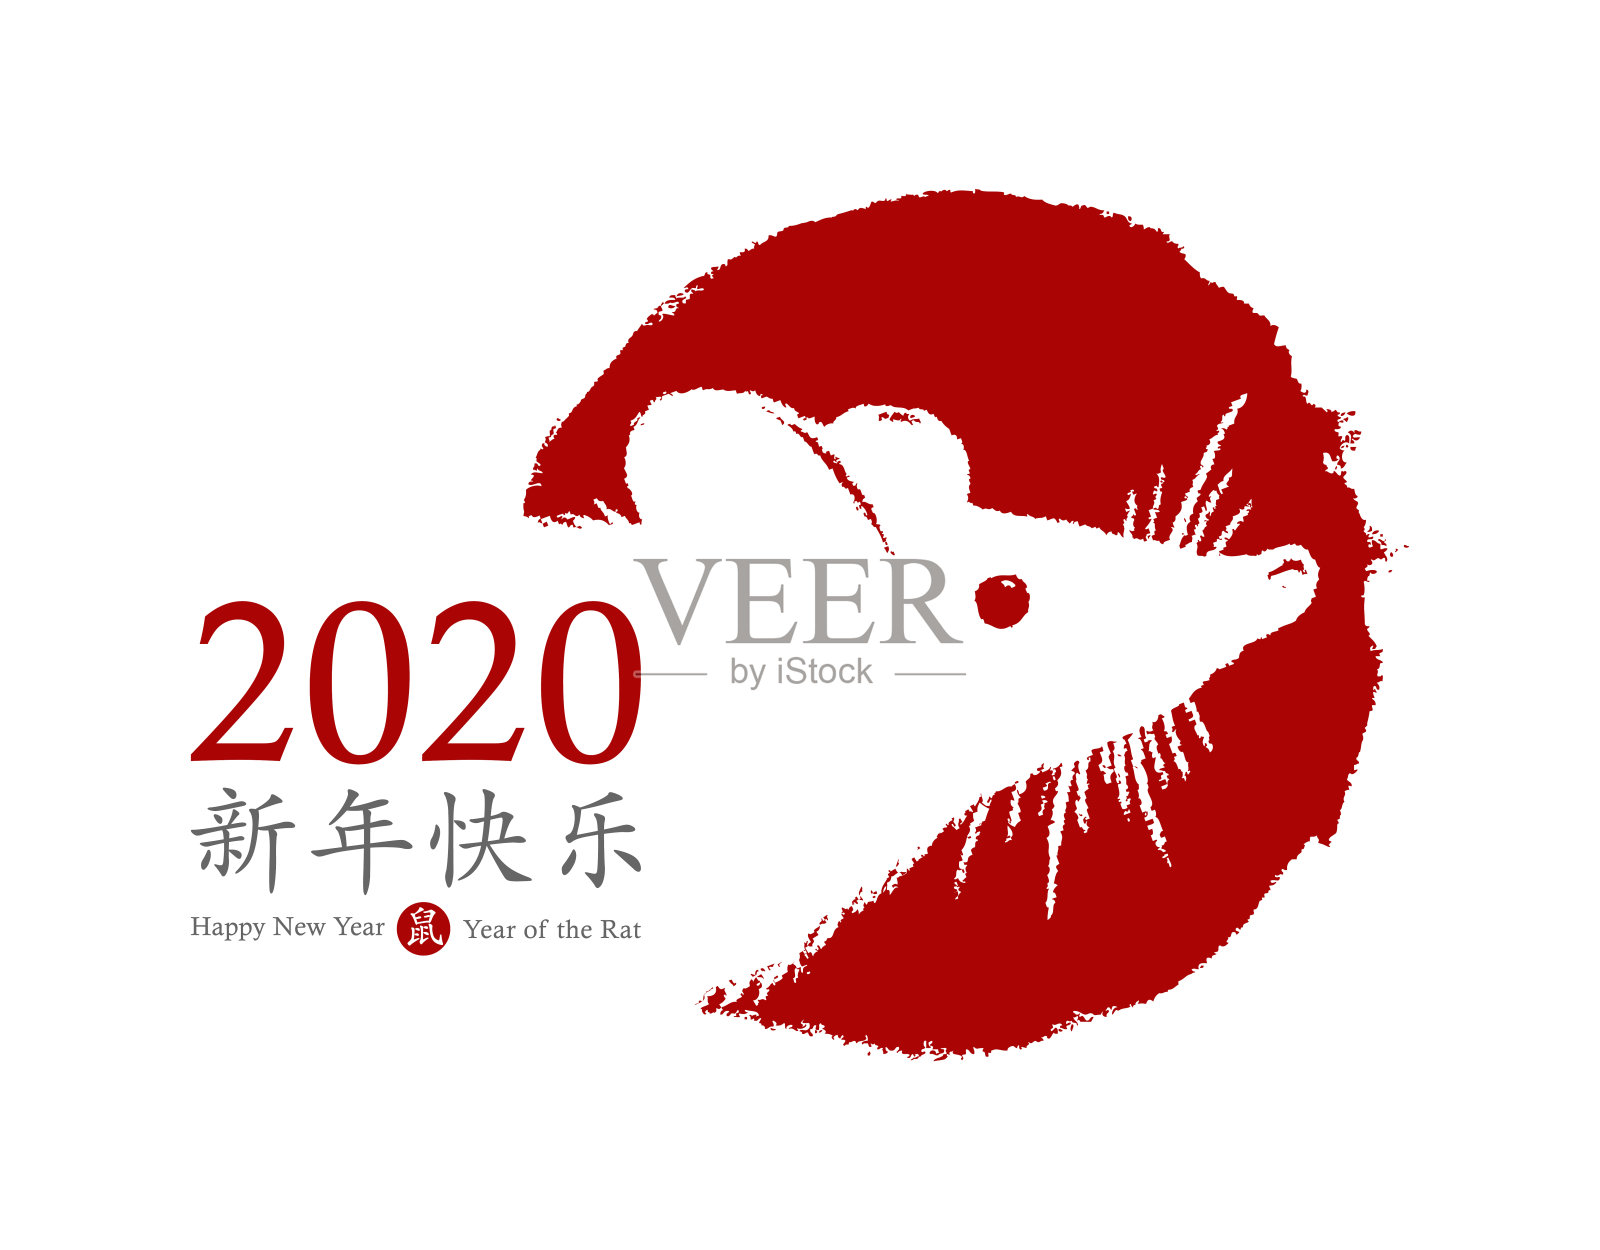 2020年的鼠年。向量名片设计。手绘红色邮票与老鼠符号。中国生肖动物的象征。中国象形文字翻译:新年快乐，老鼠。插画图片素材